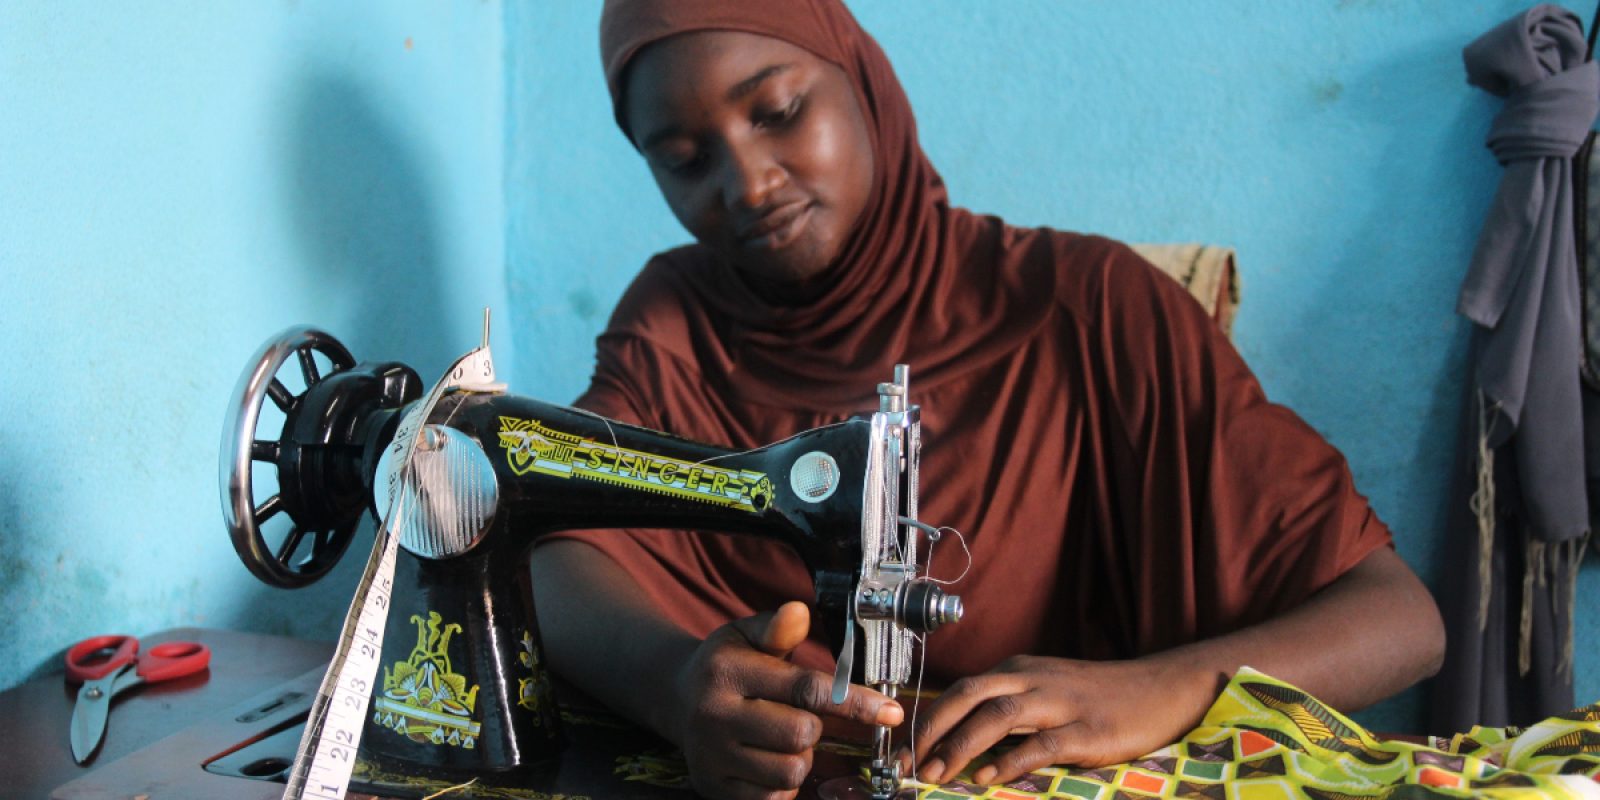 Una de las estudiantes del primer curso de costura, ofrecido por el JRS en Camerún, frente a su máquina de coser. Ella ya ha abierto su propia tienda con otras amigas del curso. (Servicio Jesuita a Refugiados)